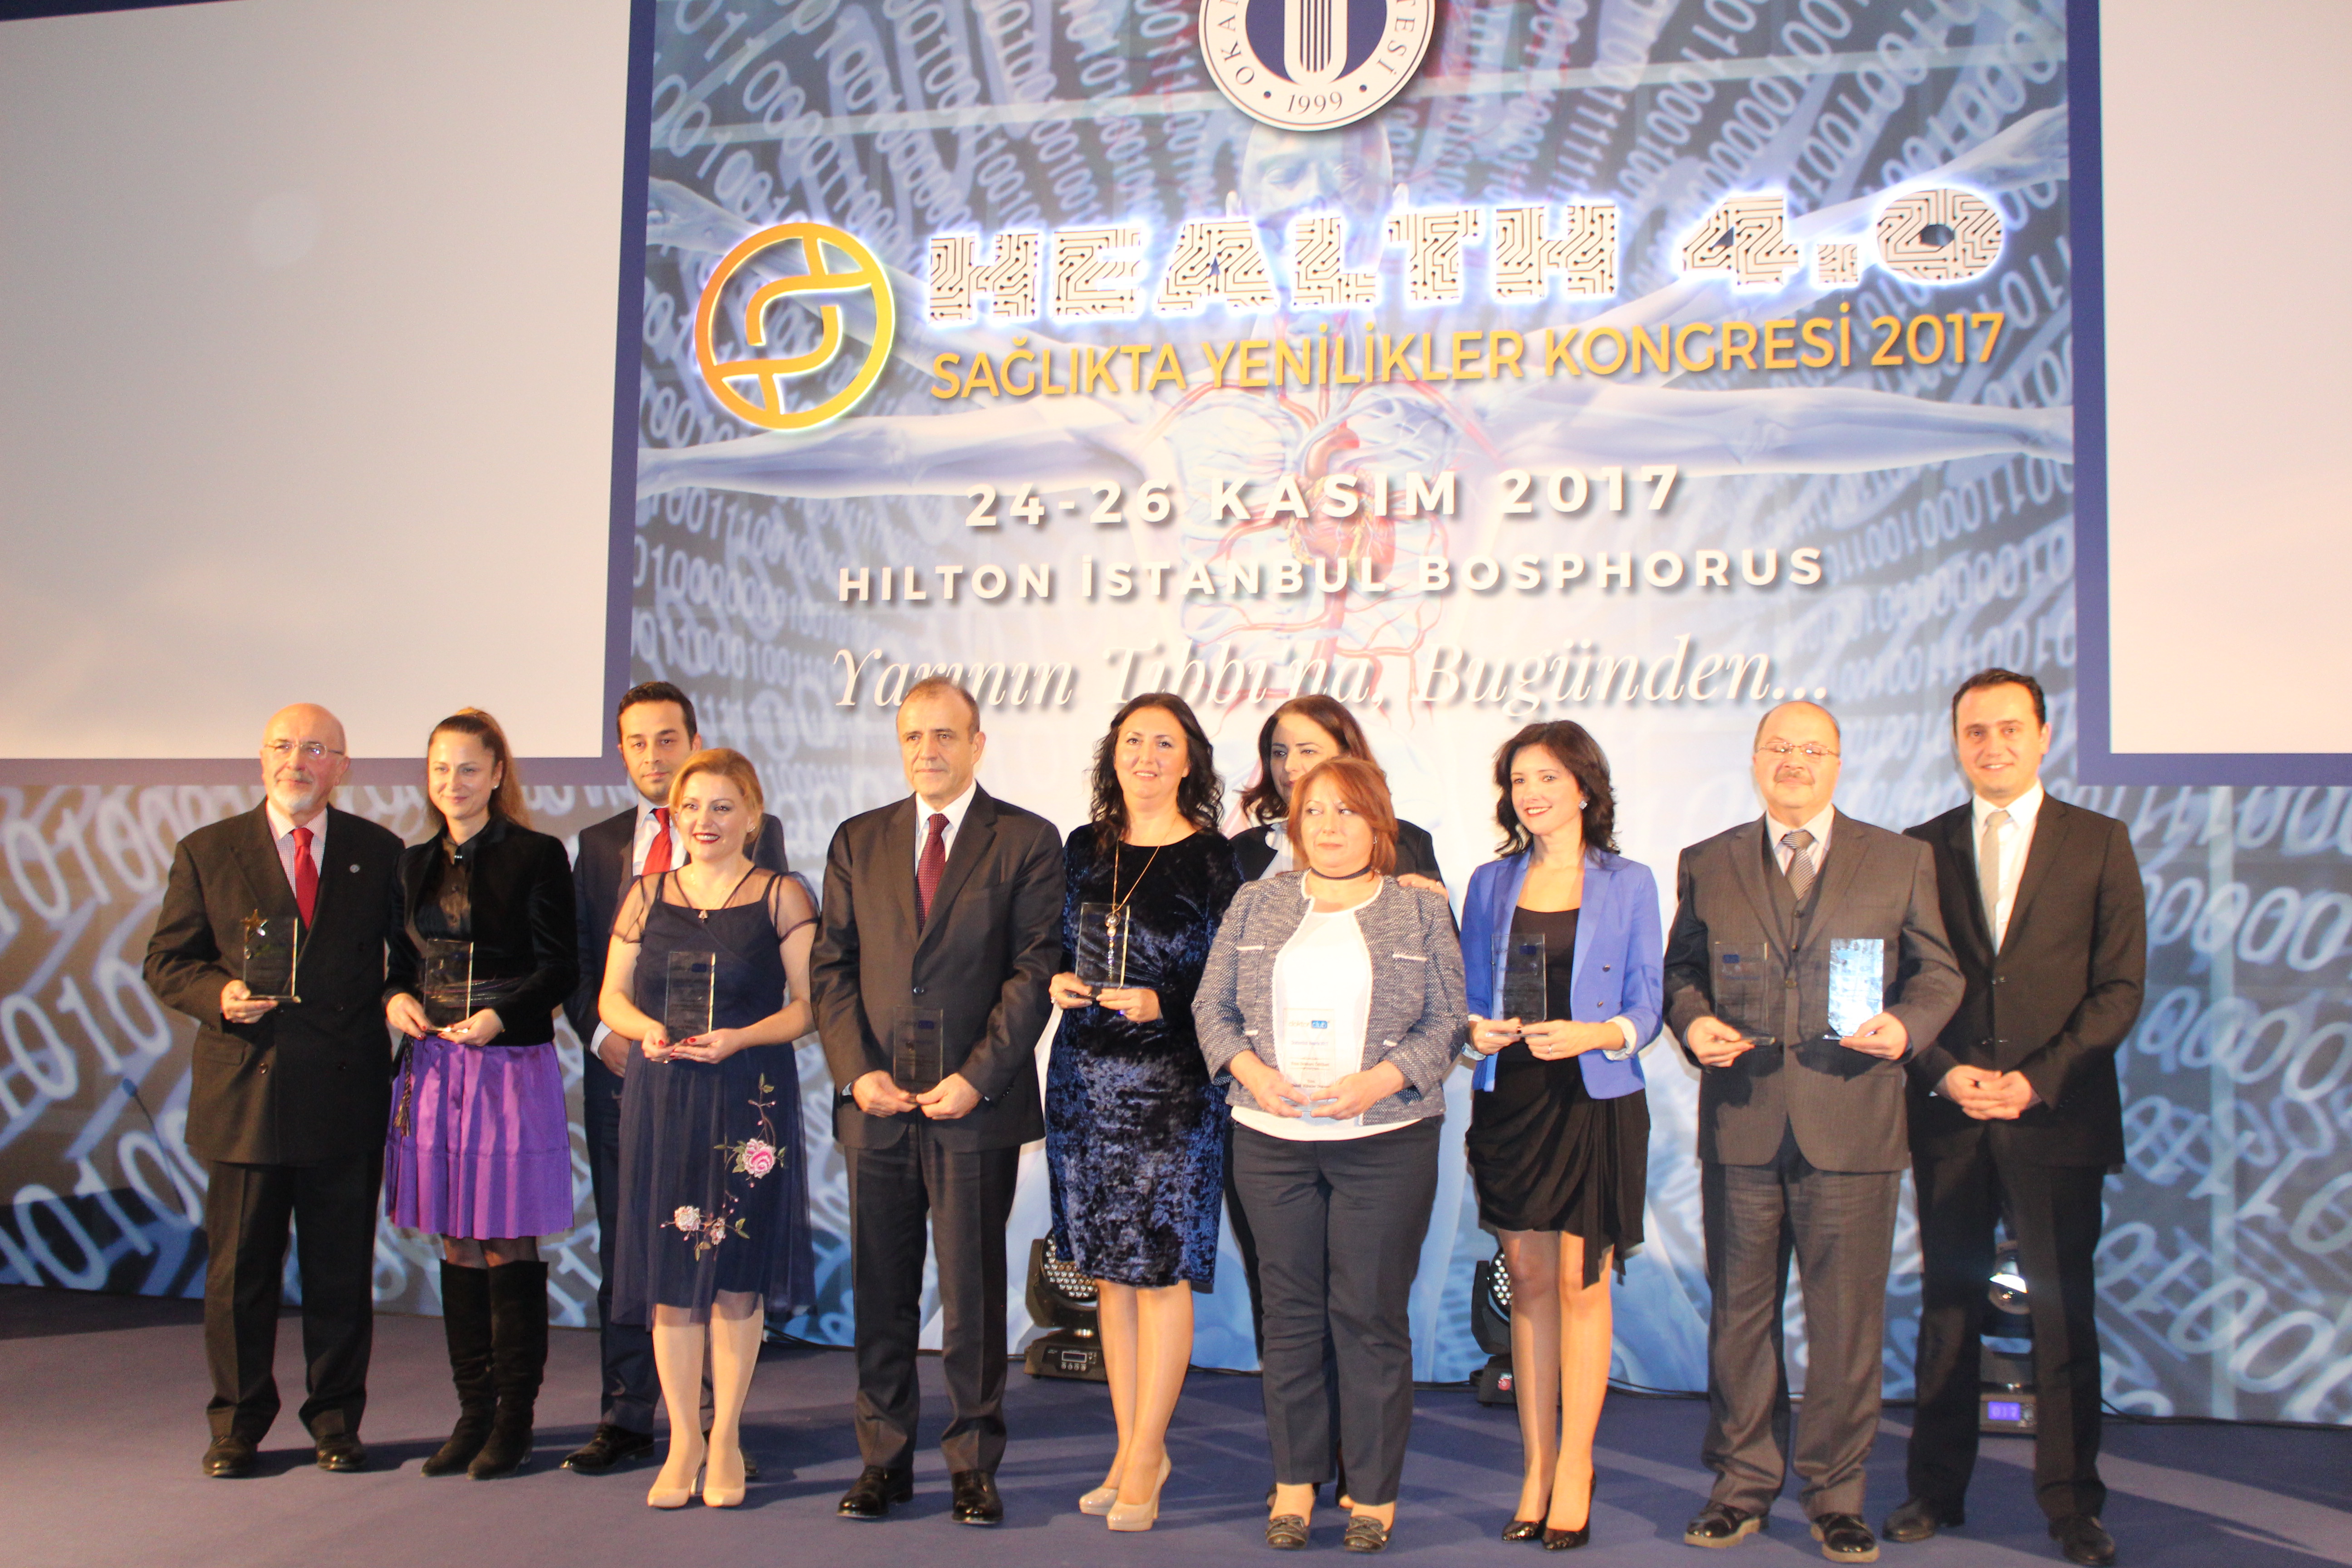 Doktorclub Awards 2017 Ödülleri 25 Kasım 2017'de - İstanbul Hilton Bosphorus Kongre Merkezinde Sahiplerini Buldu !